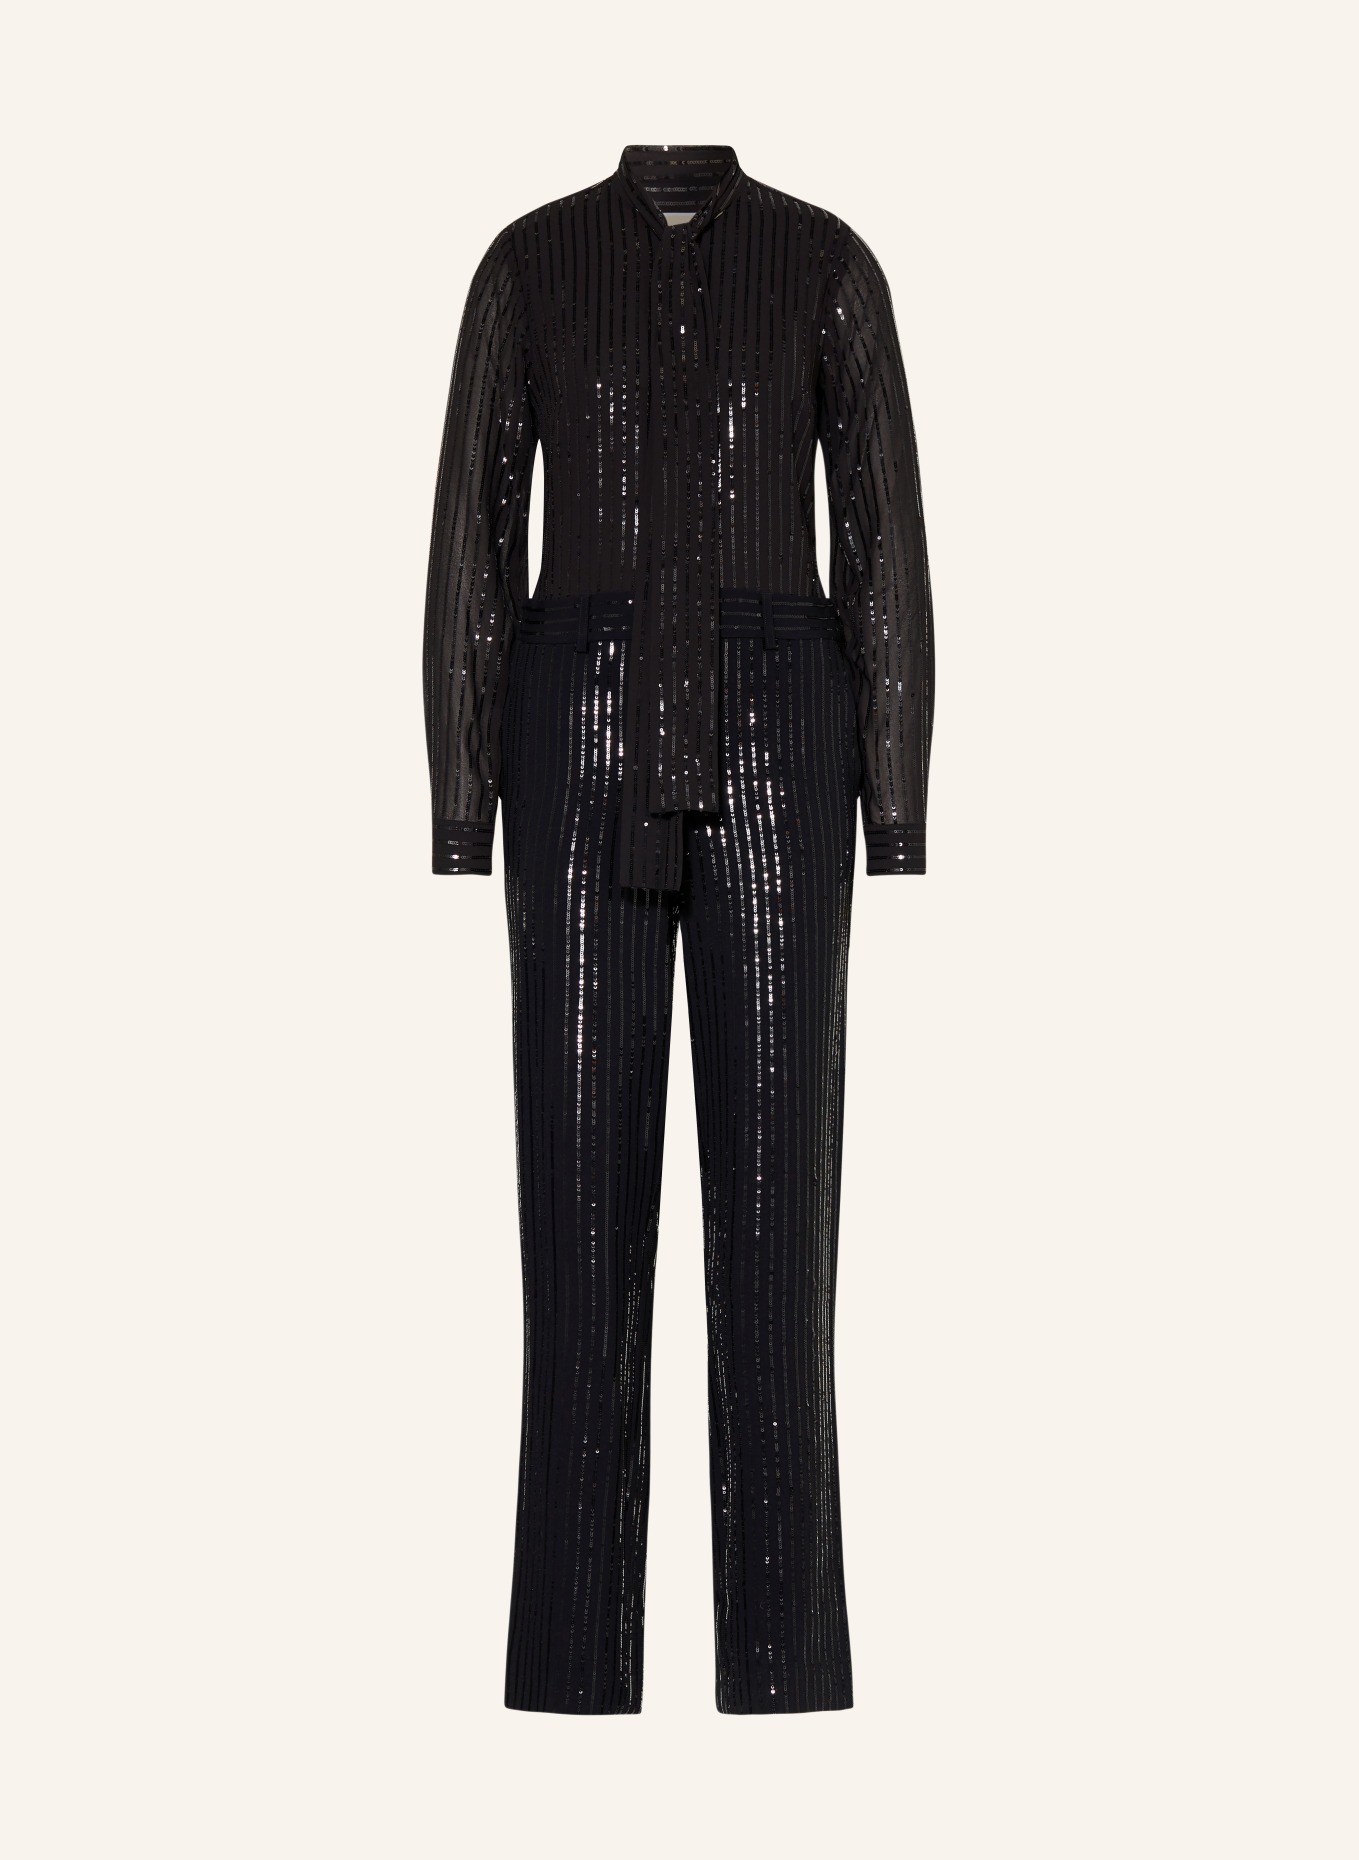 MICHAEL KORS Jumpsuit with sequins, Color: BLACK (Image 1)